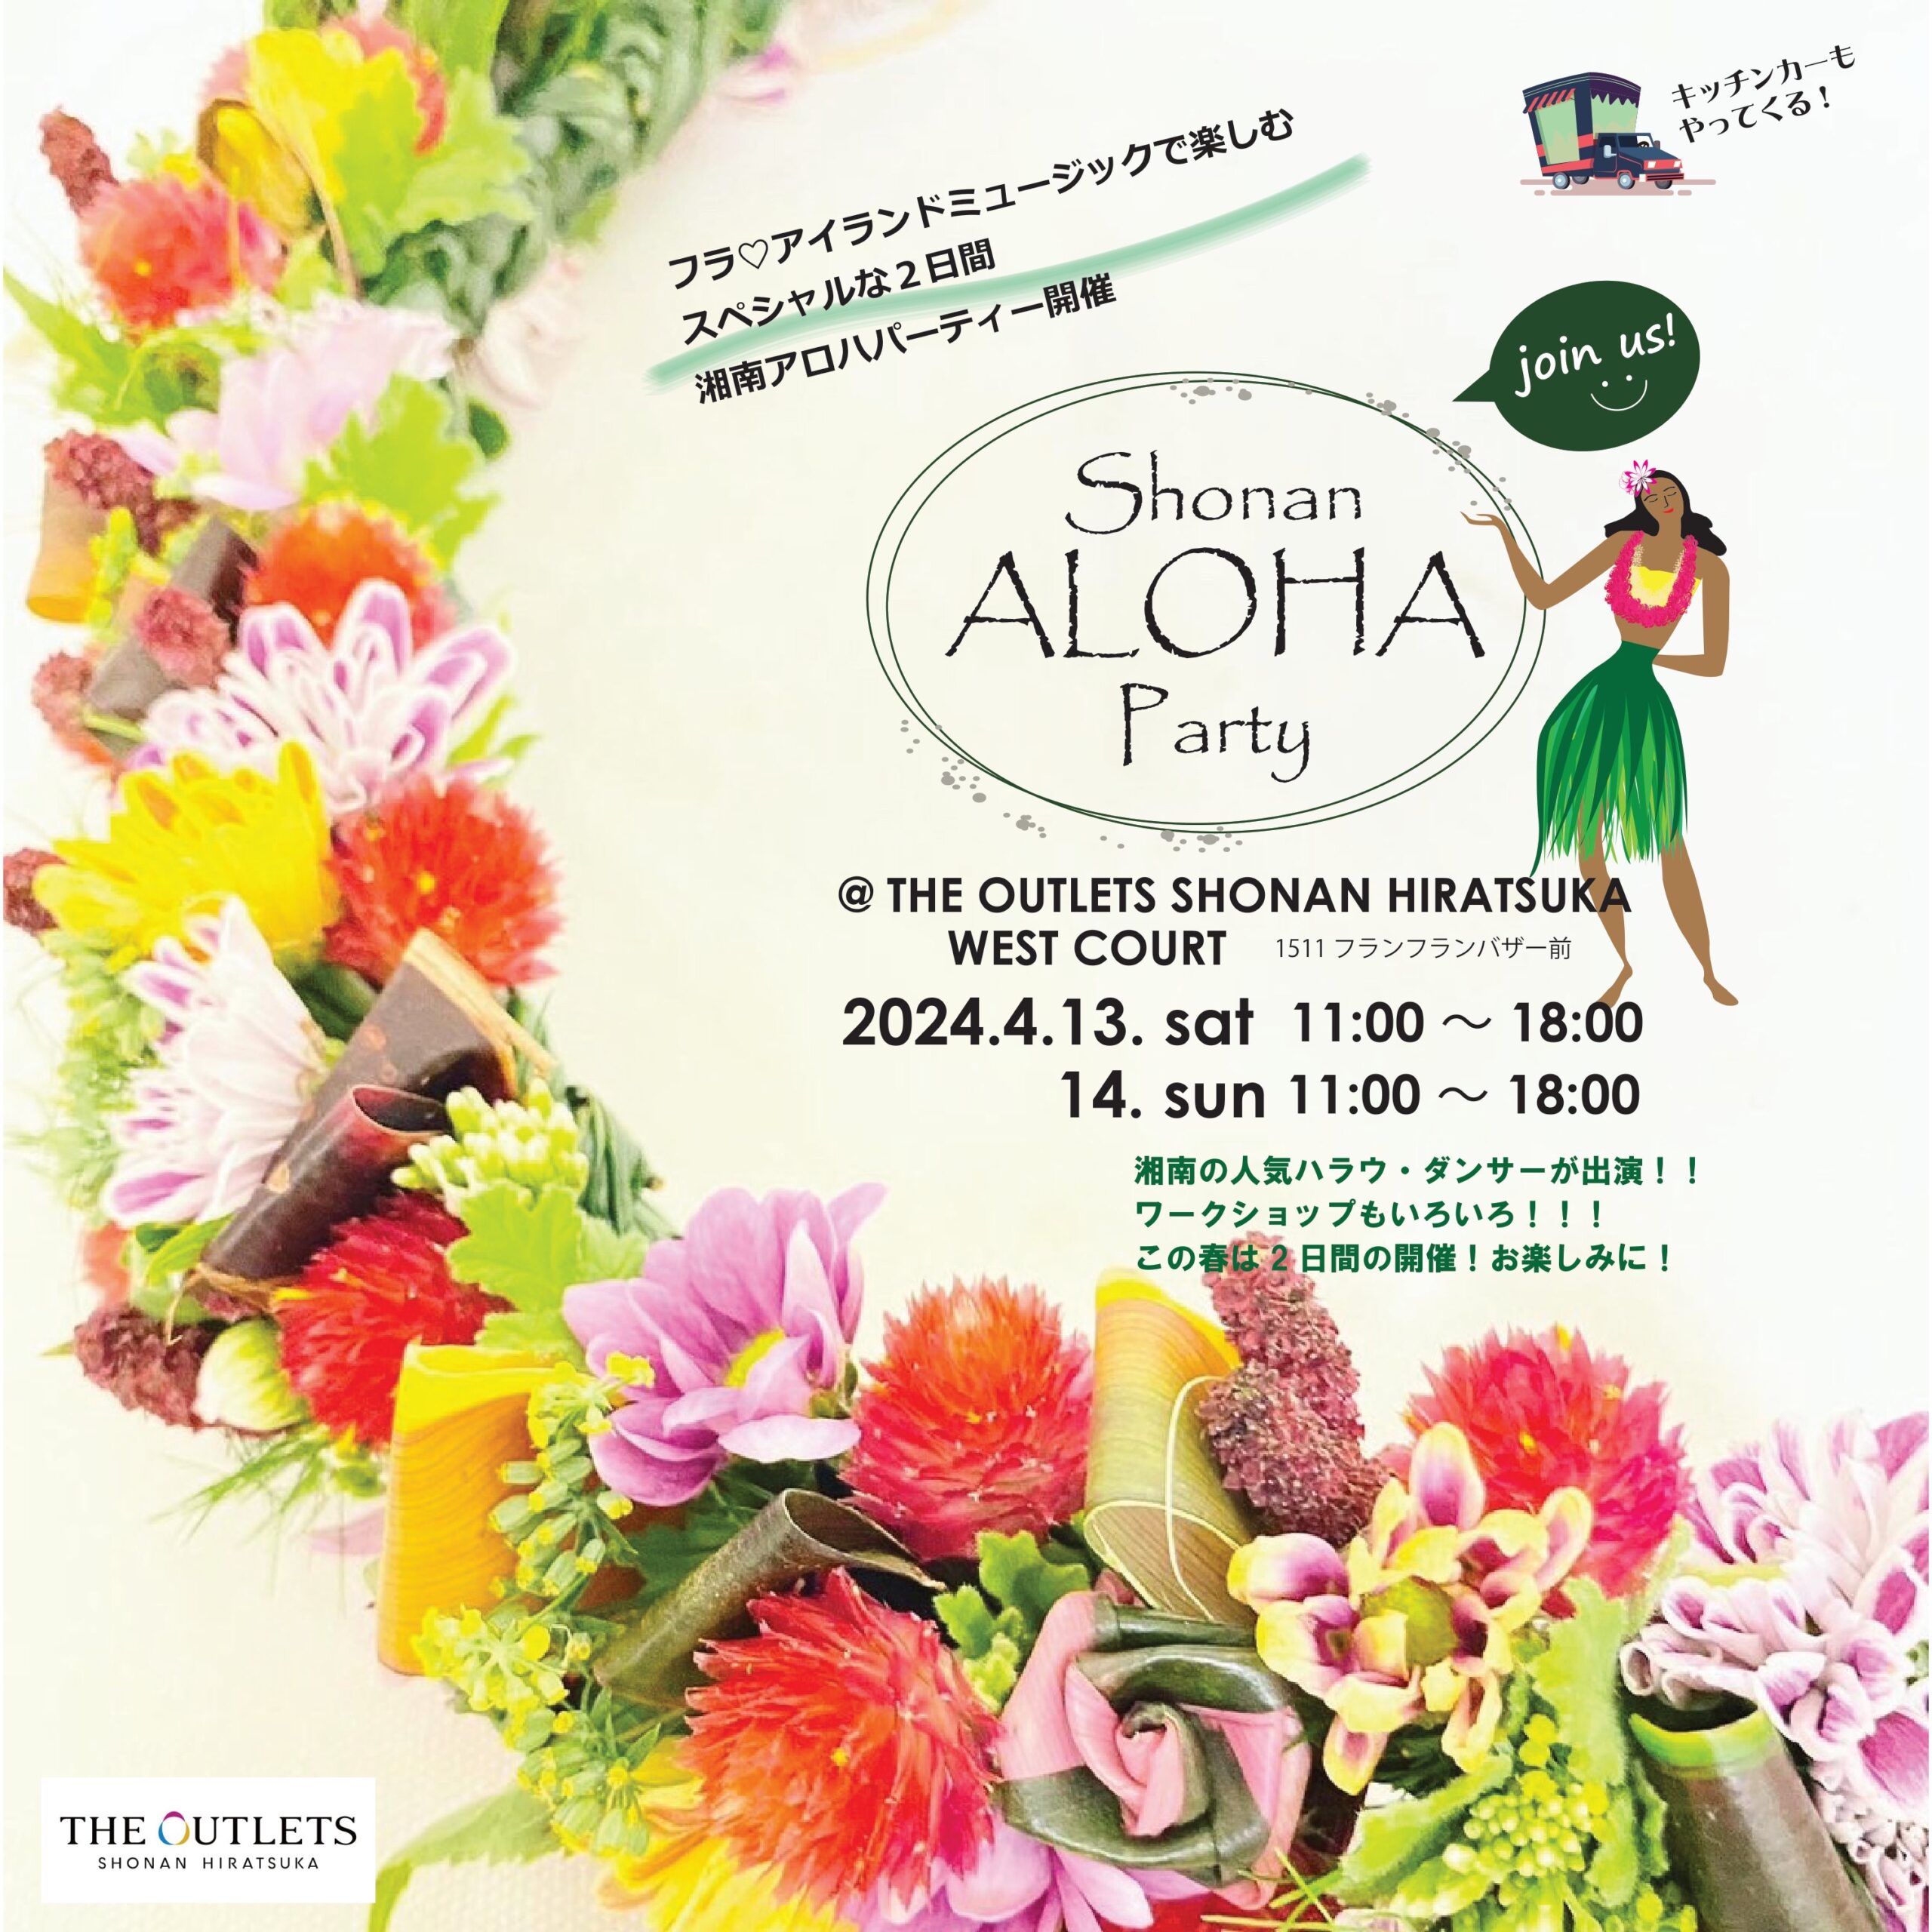 4/14は湘南平塚で開催されるイベントShonan ALOHA Party（湘南アロハパーティー）でフラパフォーマンス